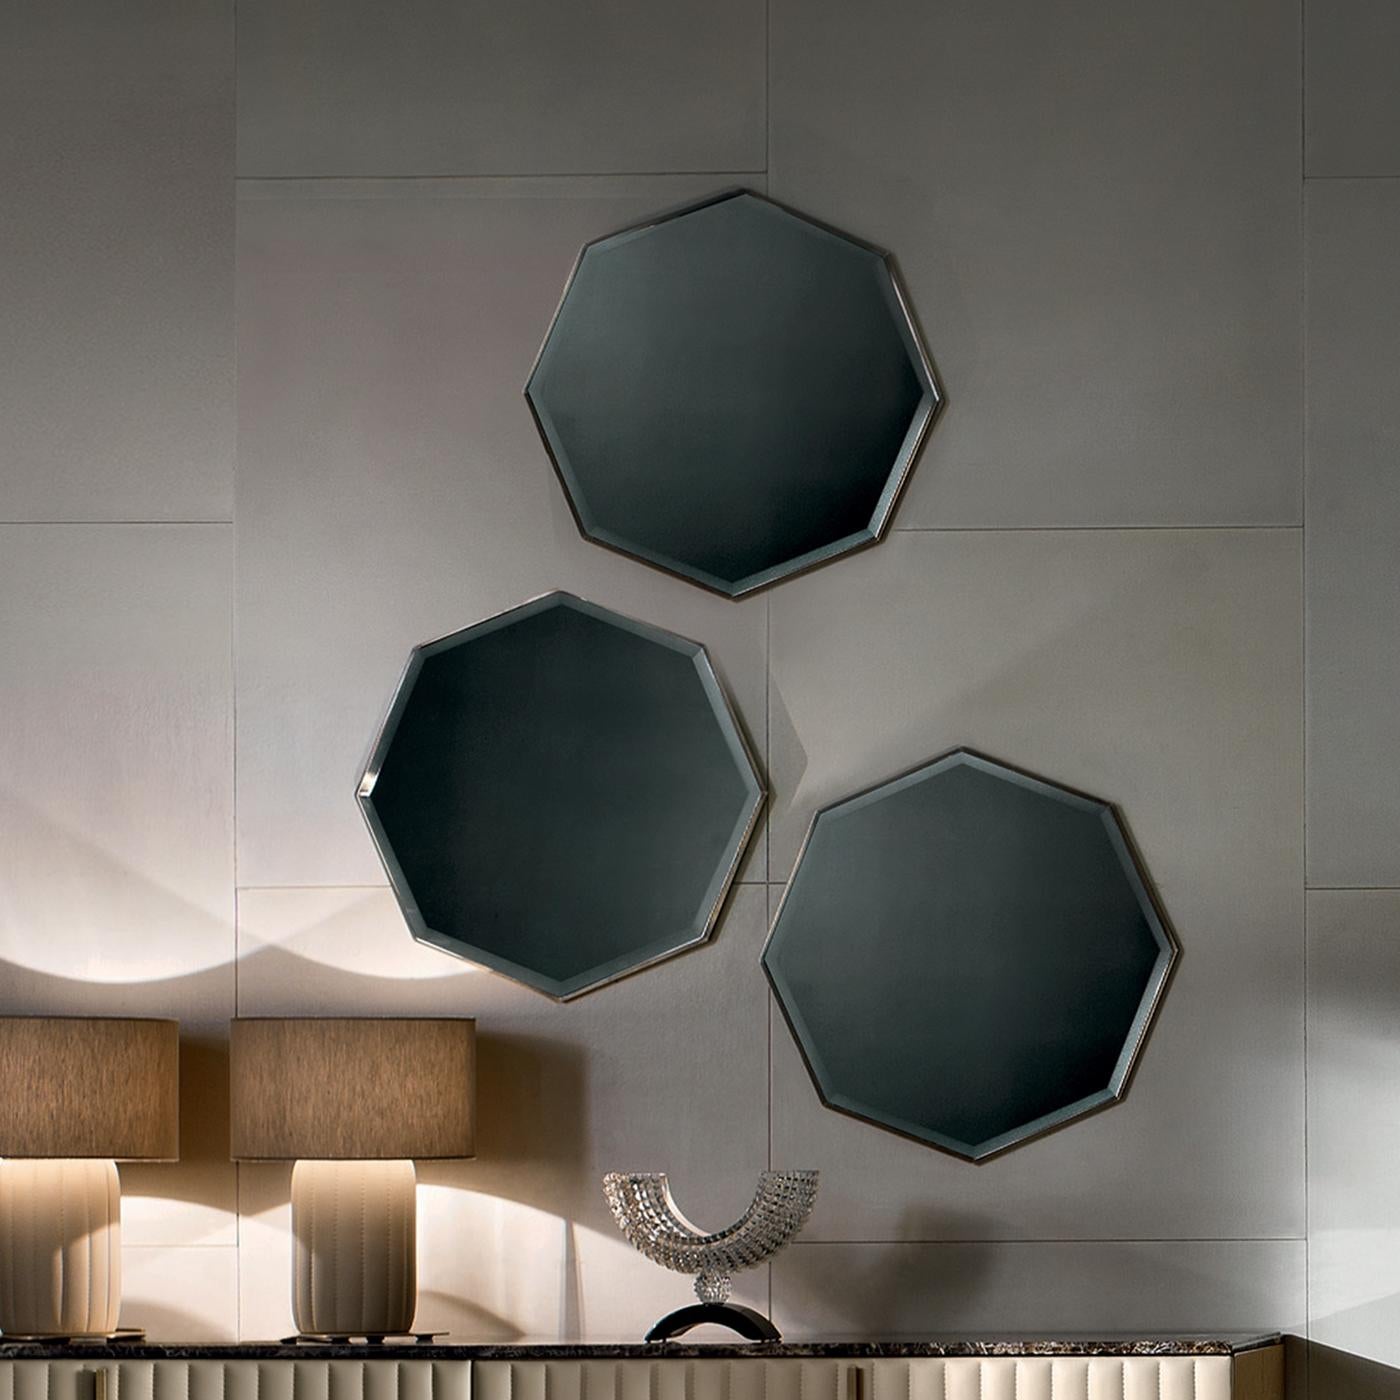 Ce miroir en laiton bruni d'inspiration rétro habillera n'importe quel mur avec une touche minimaliste mais moderne. Ce miroir élégant, au cadre octogonal fin et élégant et à la finition brossée subtile et chaleureuse, peut être placé au-dessus